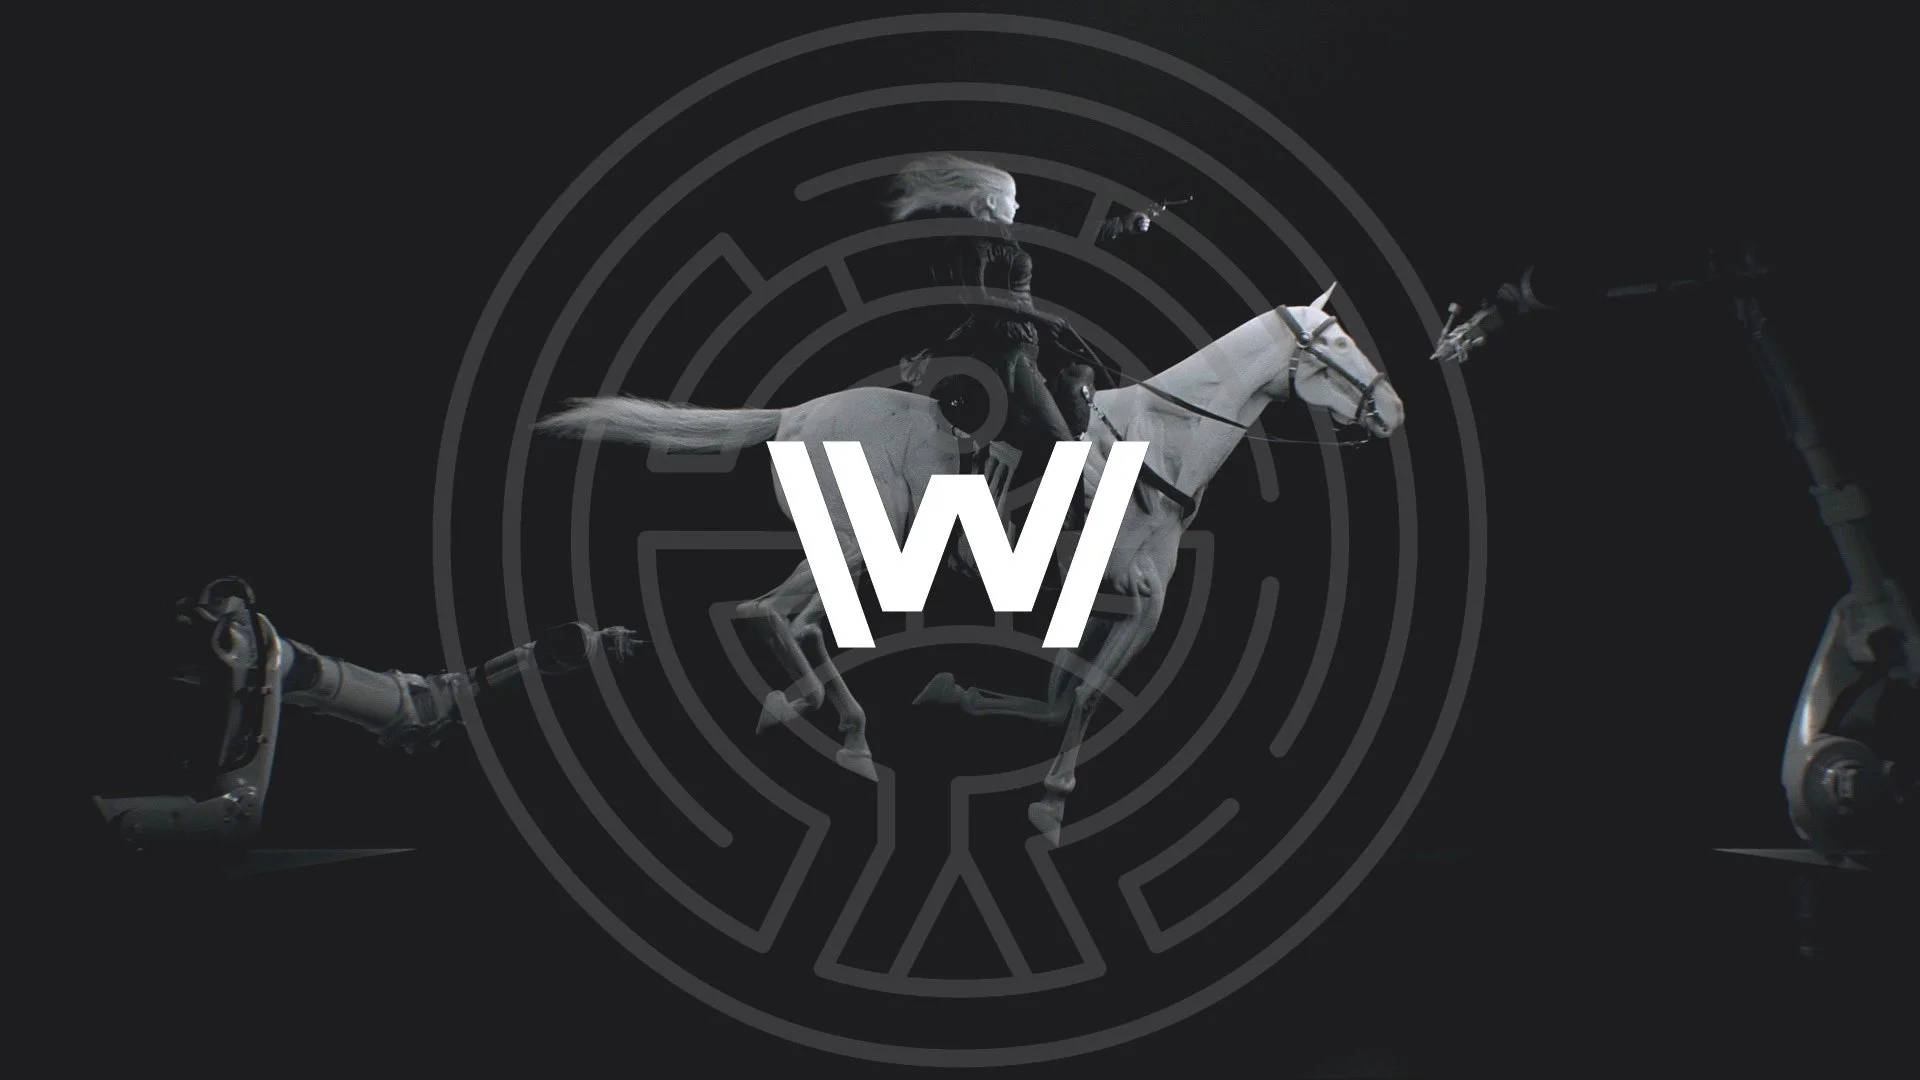 Westworldrundes Logo In Schwarz Wallpaper